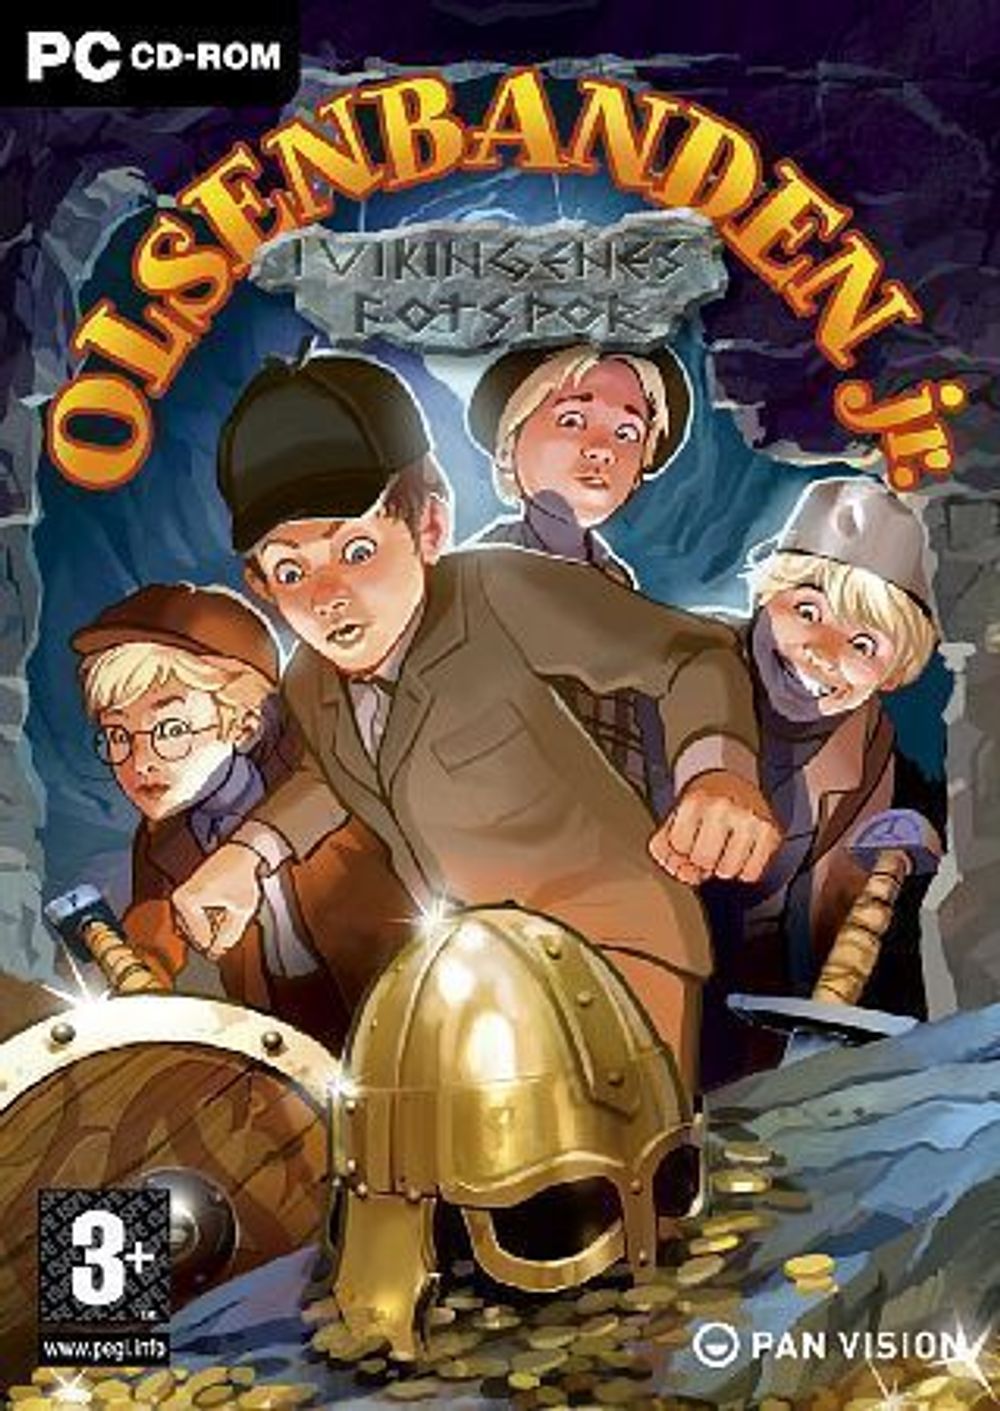 Et nytt norsk spill som krever litt mer enn vanlige underholdingsspill er «Olsenbanden jr. i vikingenes fotspor». Dette er det første strategispillet for barn utviklet i Norge. Det finnes en rekke andre pedagogiske spill hos bokhandleren.